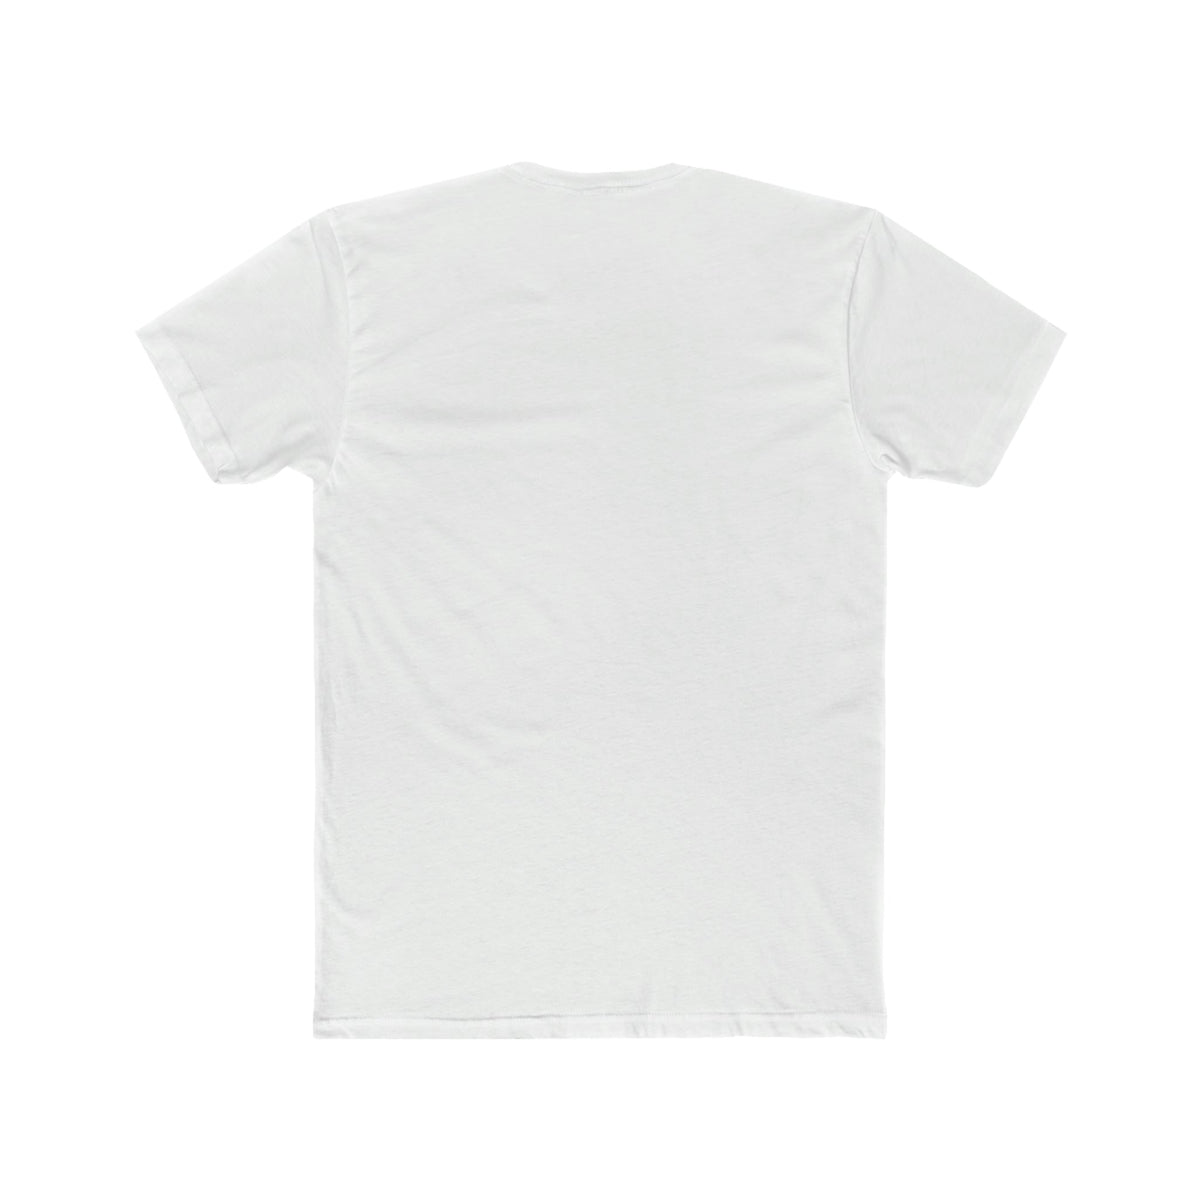 Topdad Deluxe Unisex T-shirt